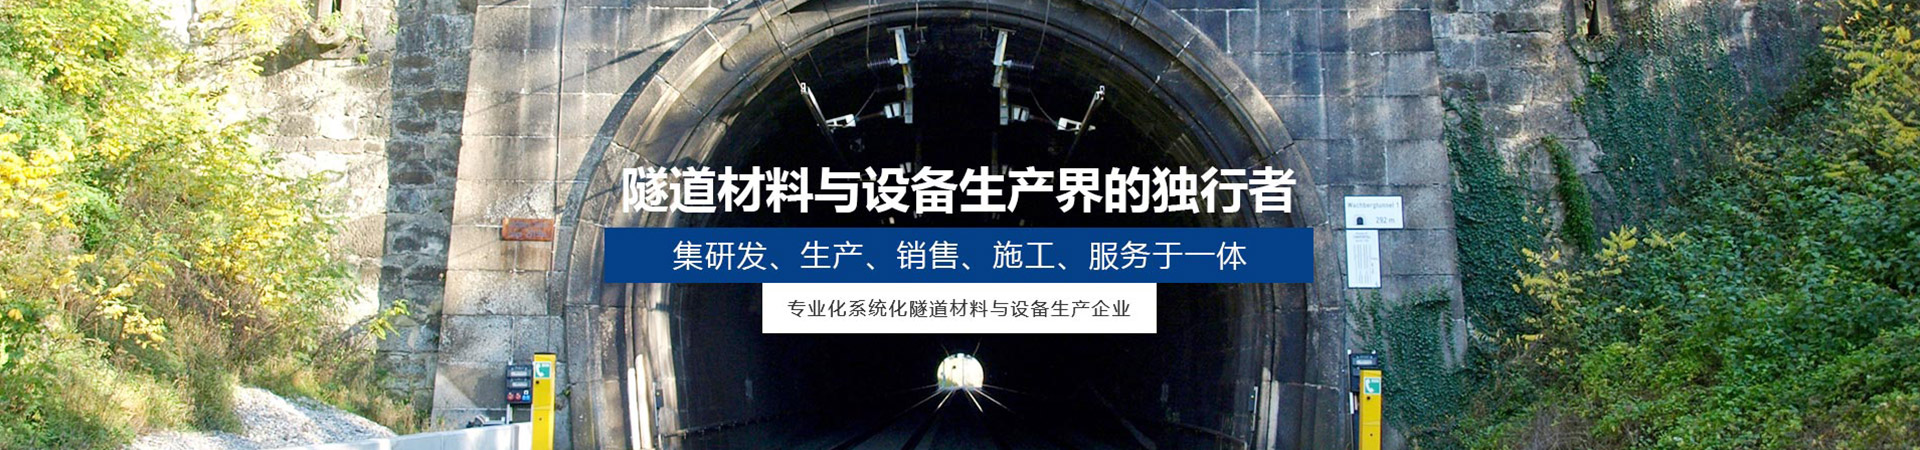 隧道高分子复合挡板多少钱_隧道建筑项目合作生产厂家-四川皓德斯新材料科技有限公司官网